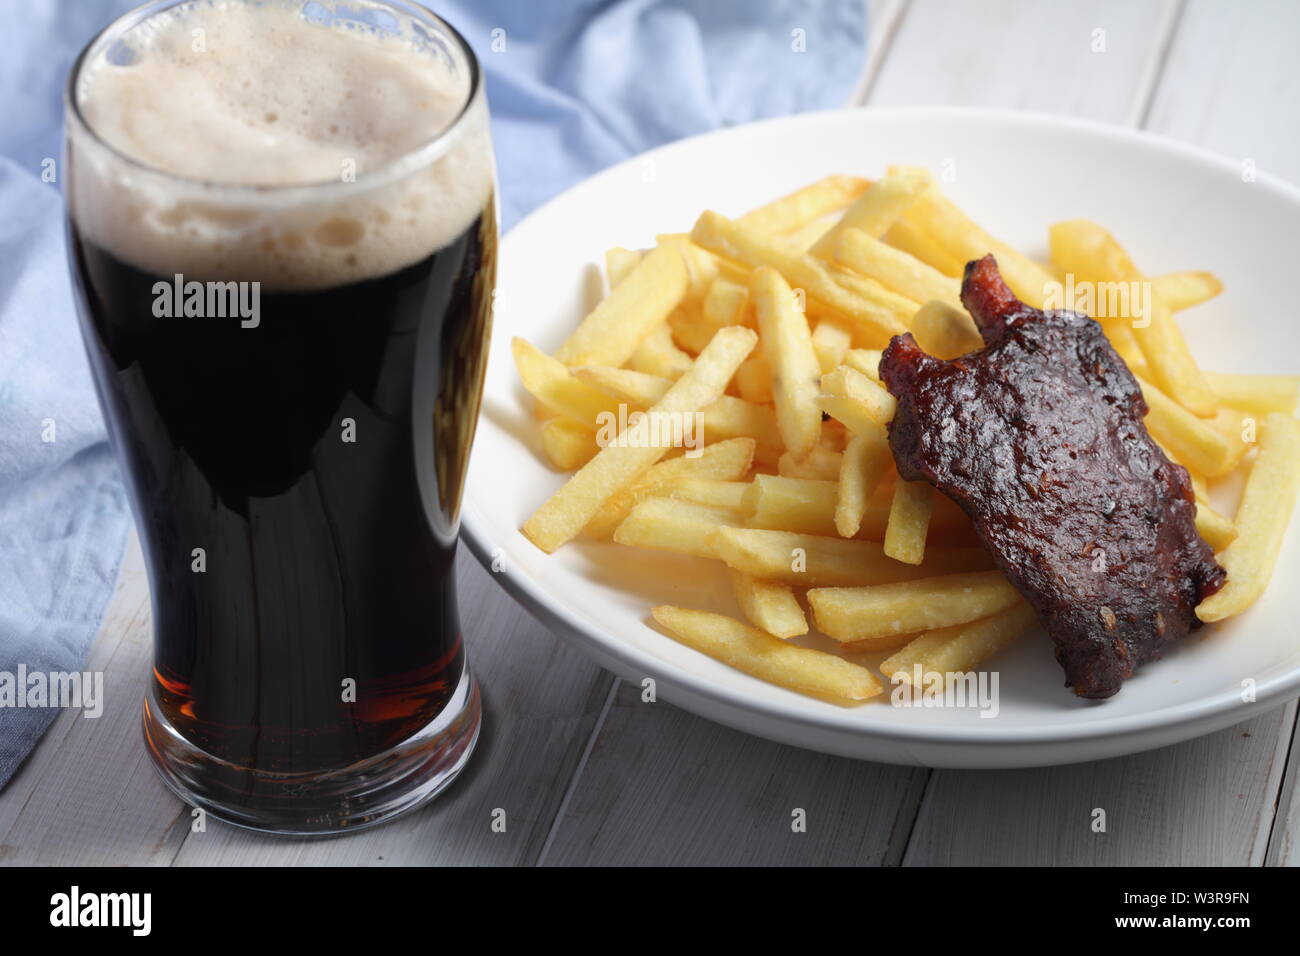 Côtes de porc grillées avec des frites et un verre de bière brune Banque D'Images